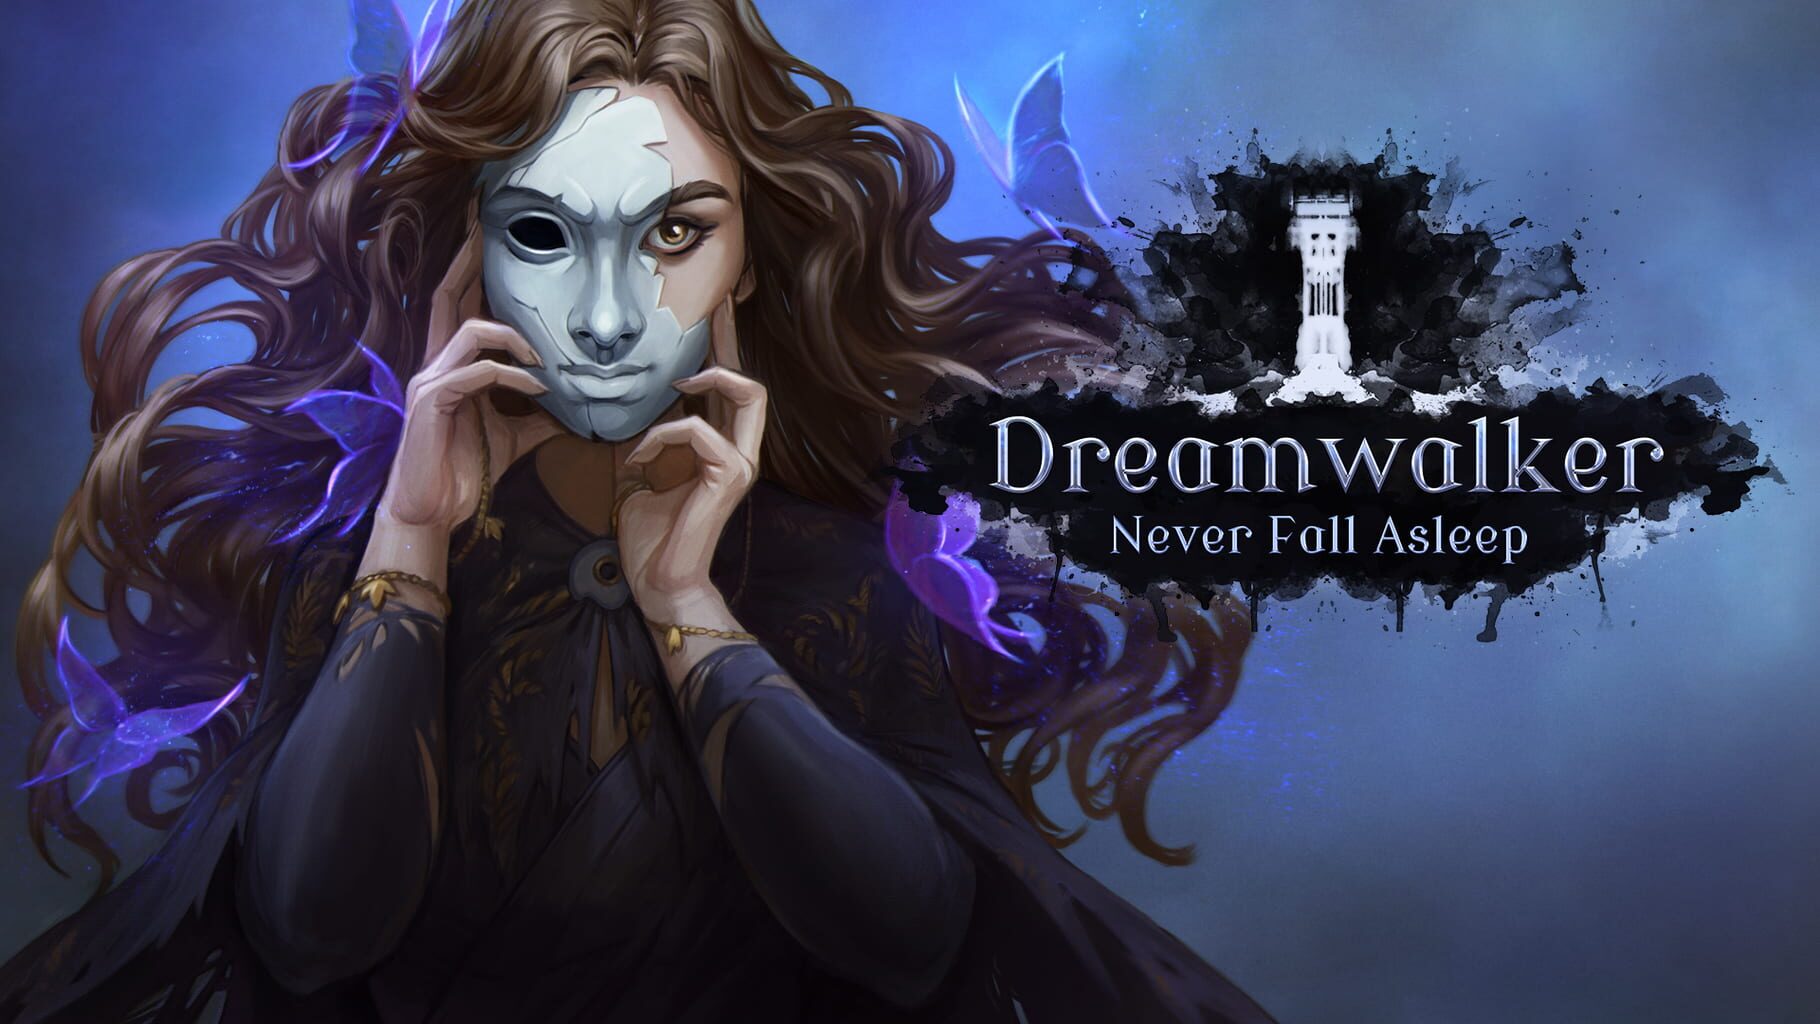 Dreamwalker: Never Fall Asleep artwork